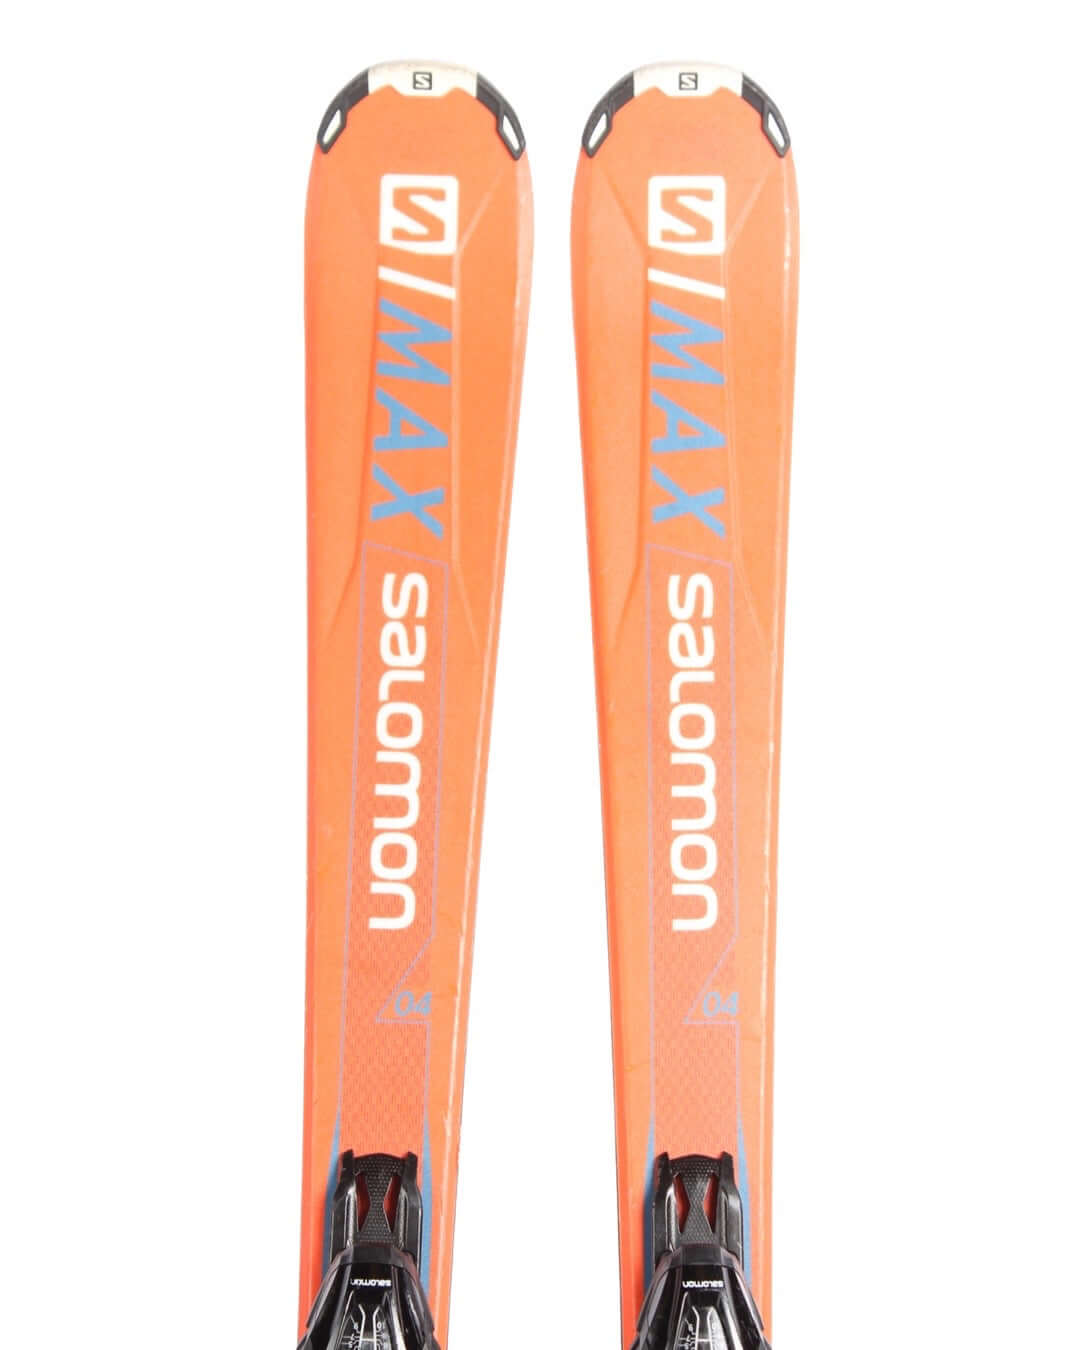 Ski - Salomon S-Max 4R - 1499 kr